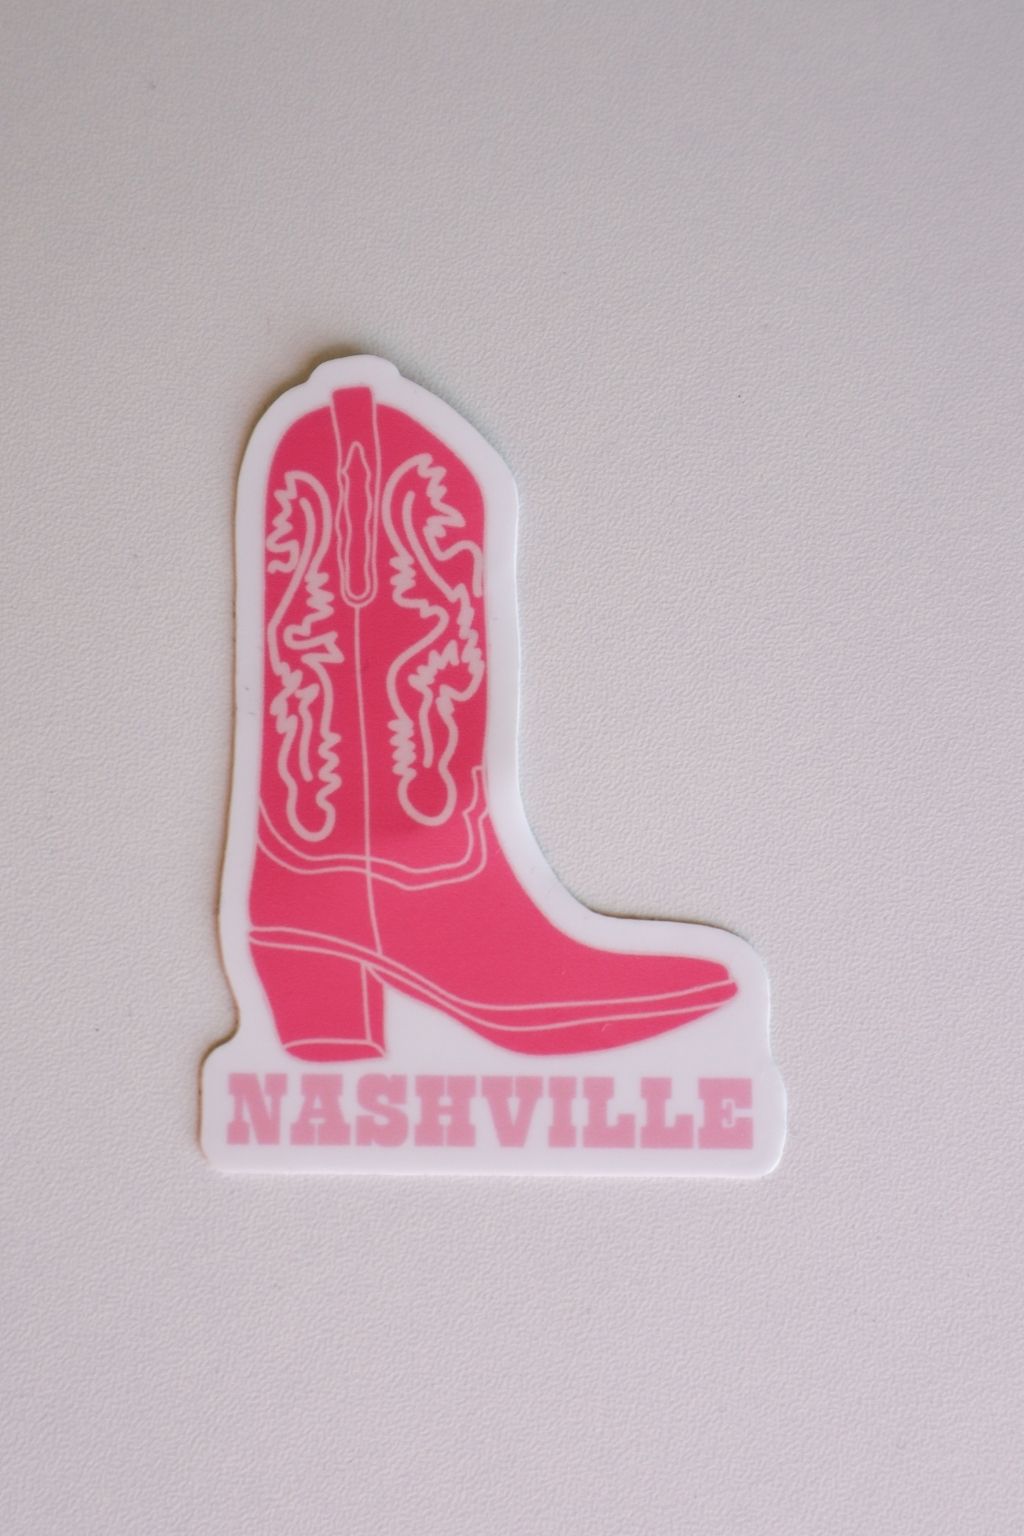 Nashville Sticker Pink Boot